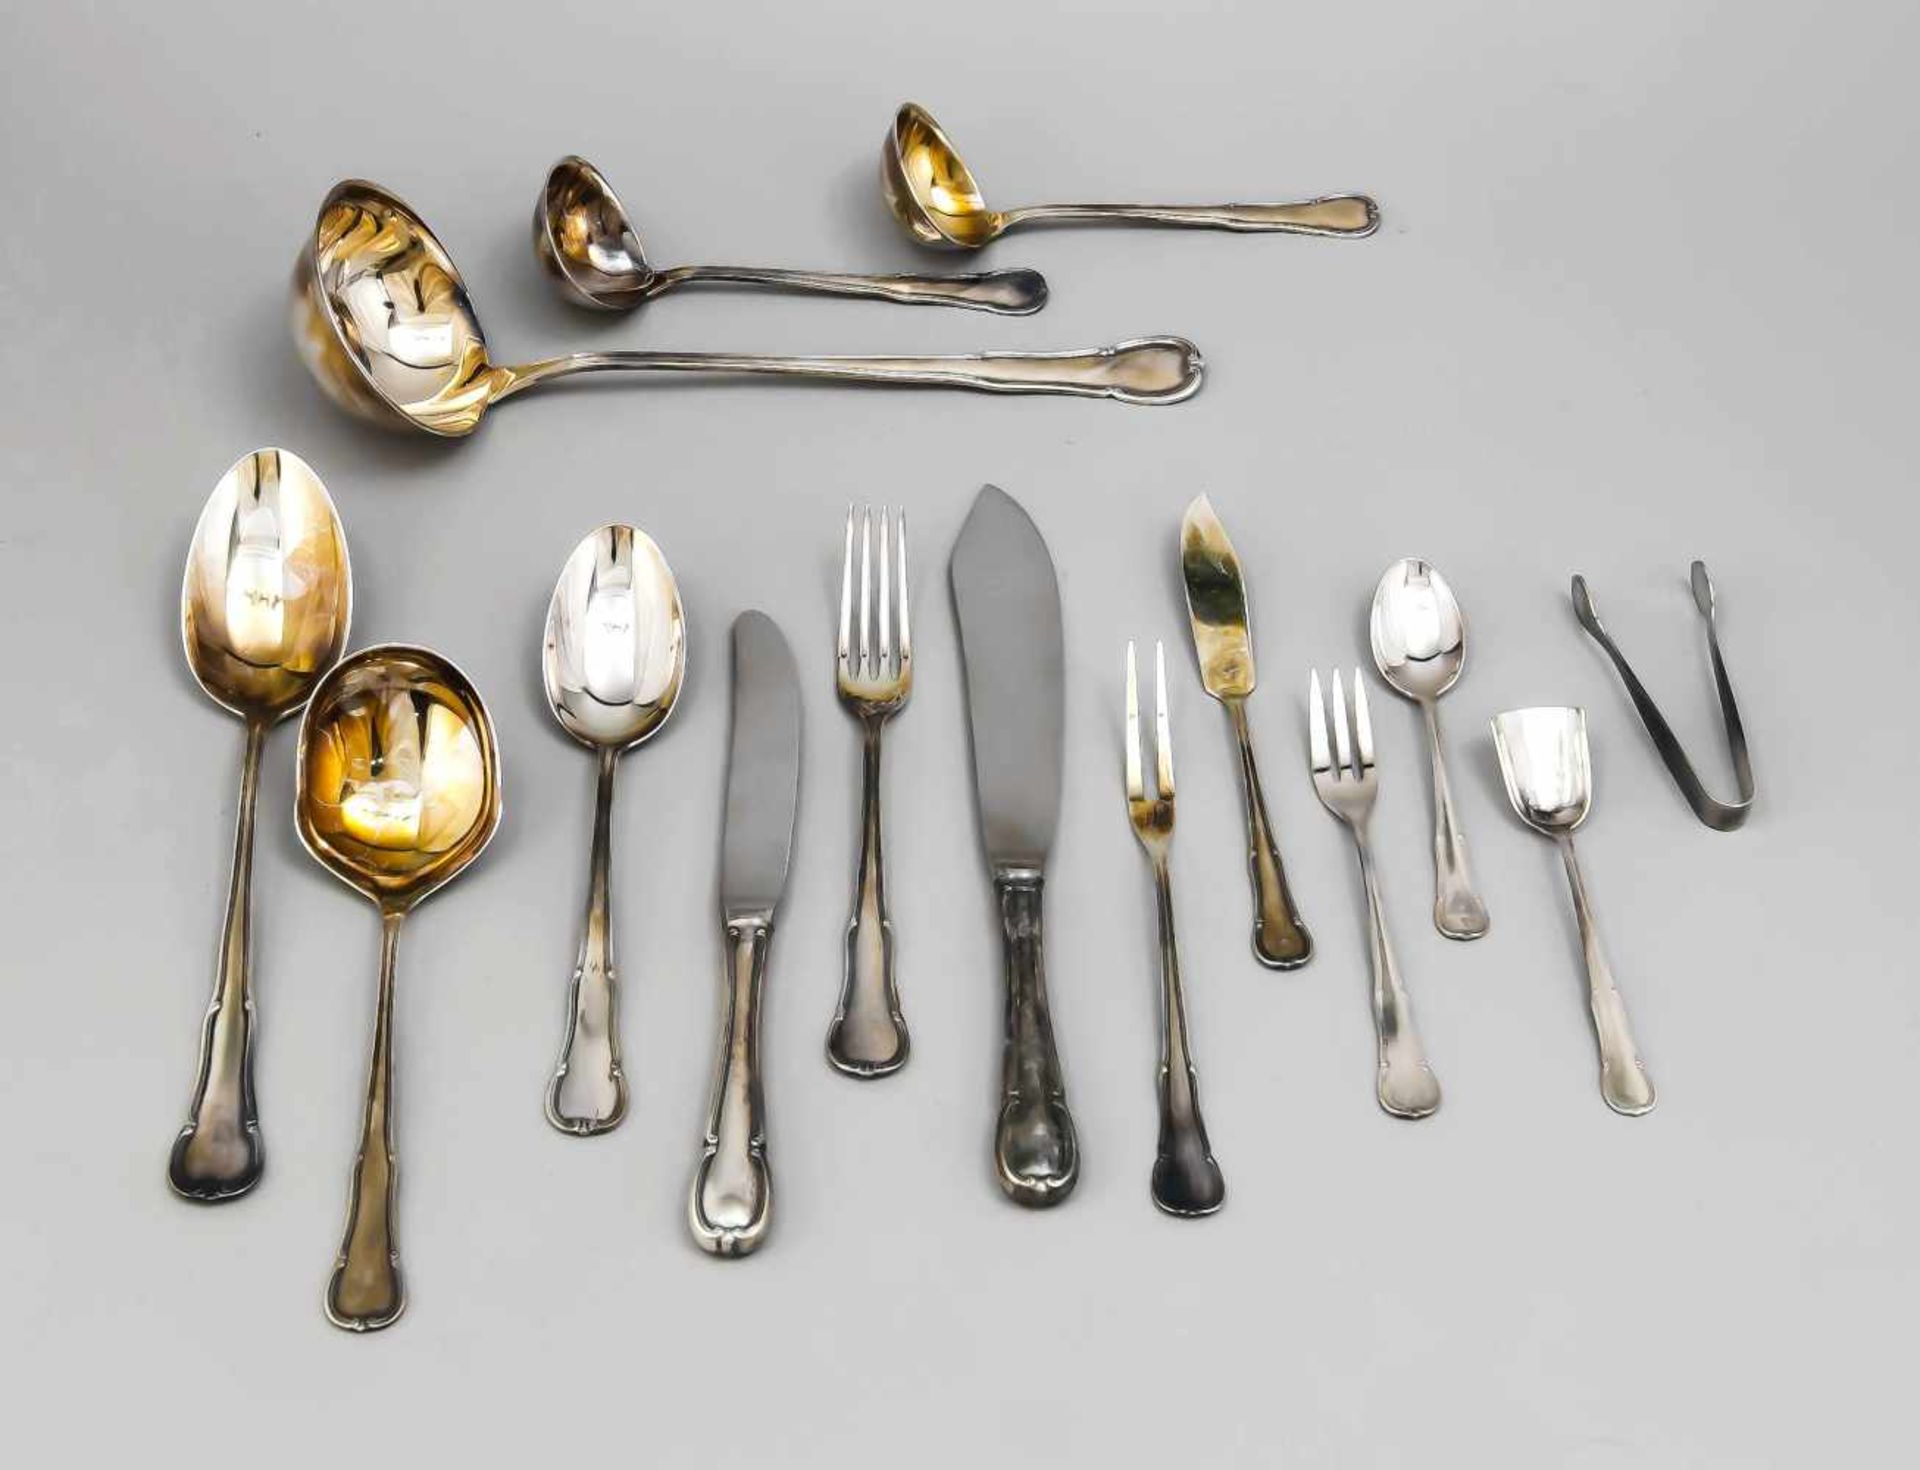 Cutlery for twelve persons, German, 20th century, hallmarked WMF, Geislingen, silver800/000,